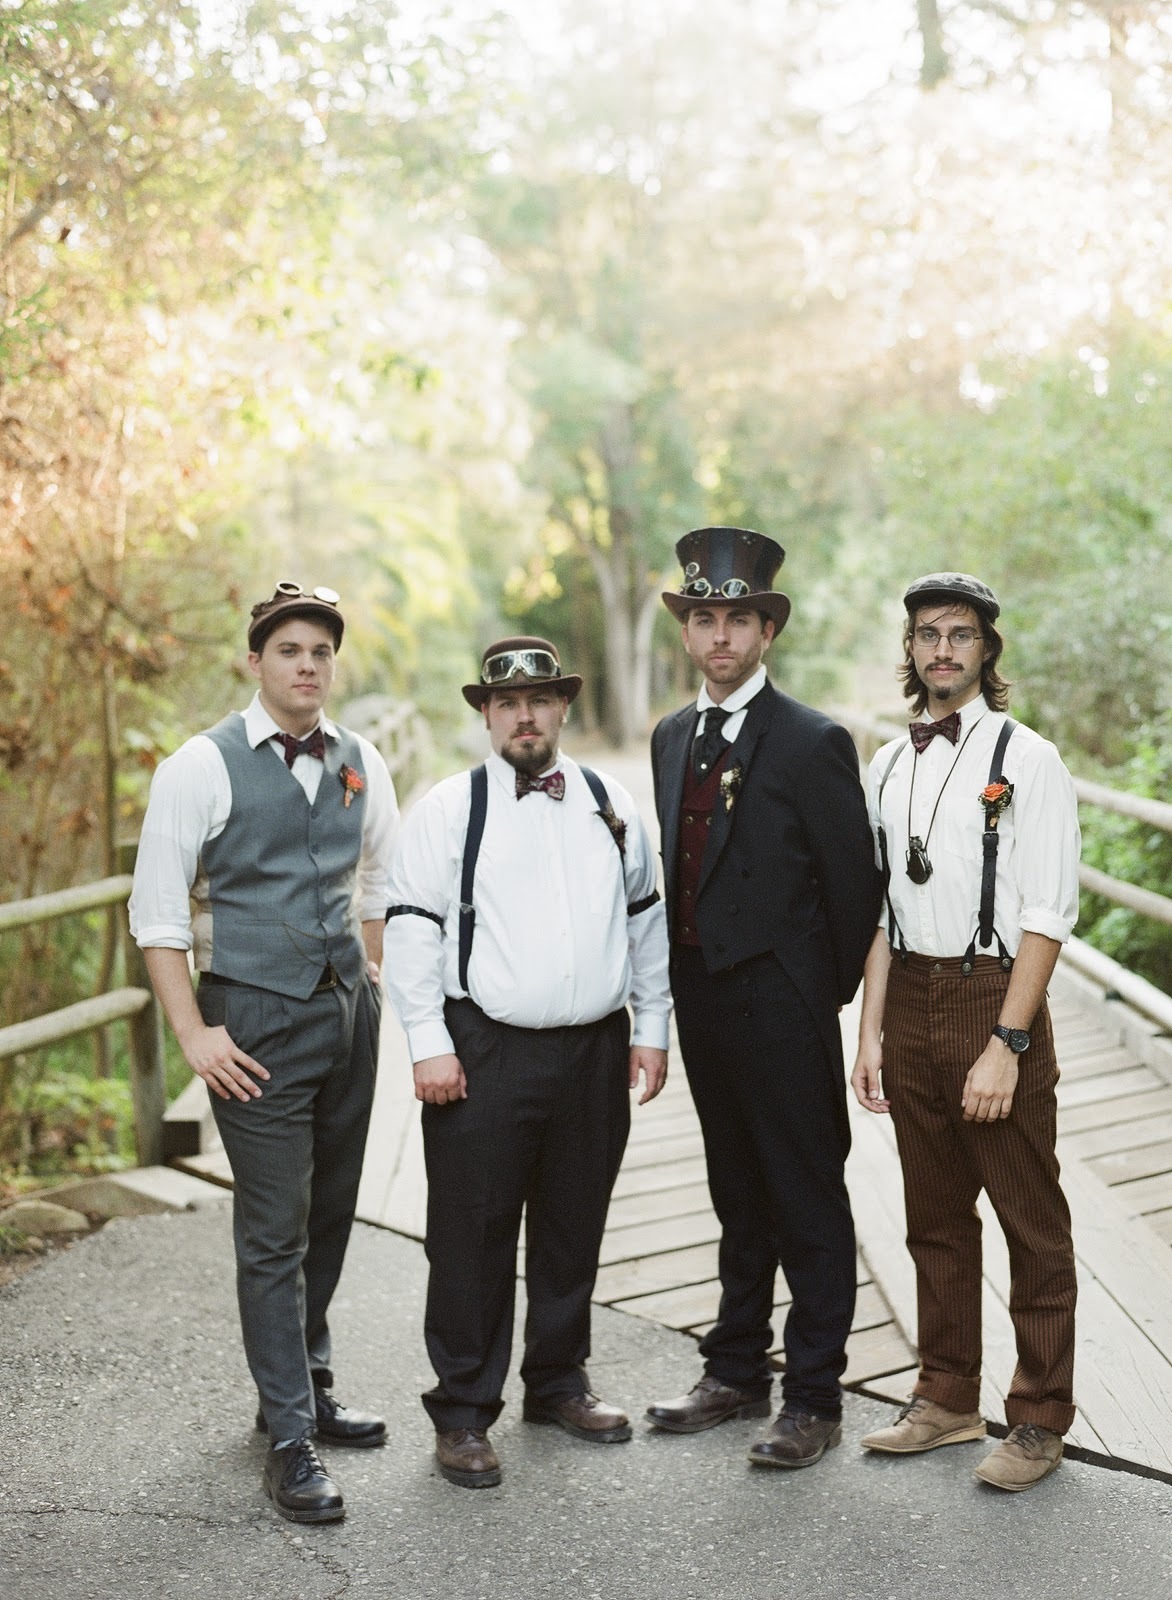 Steampunk wedding: варианты декора и нарядов свадьбы в стиле стимпанк, фото № 3